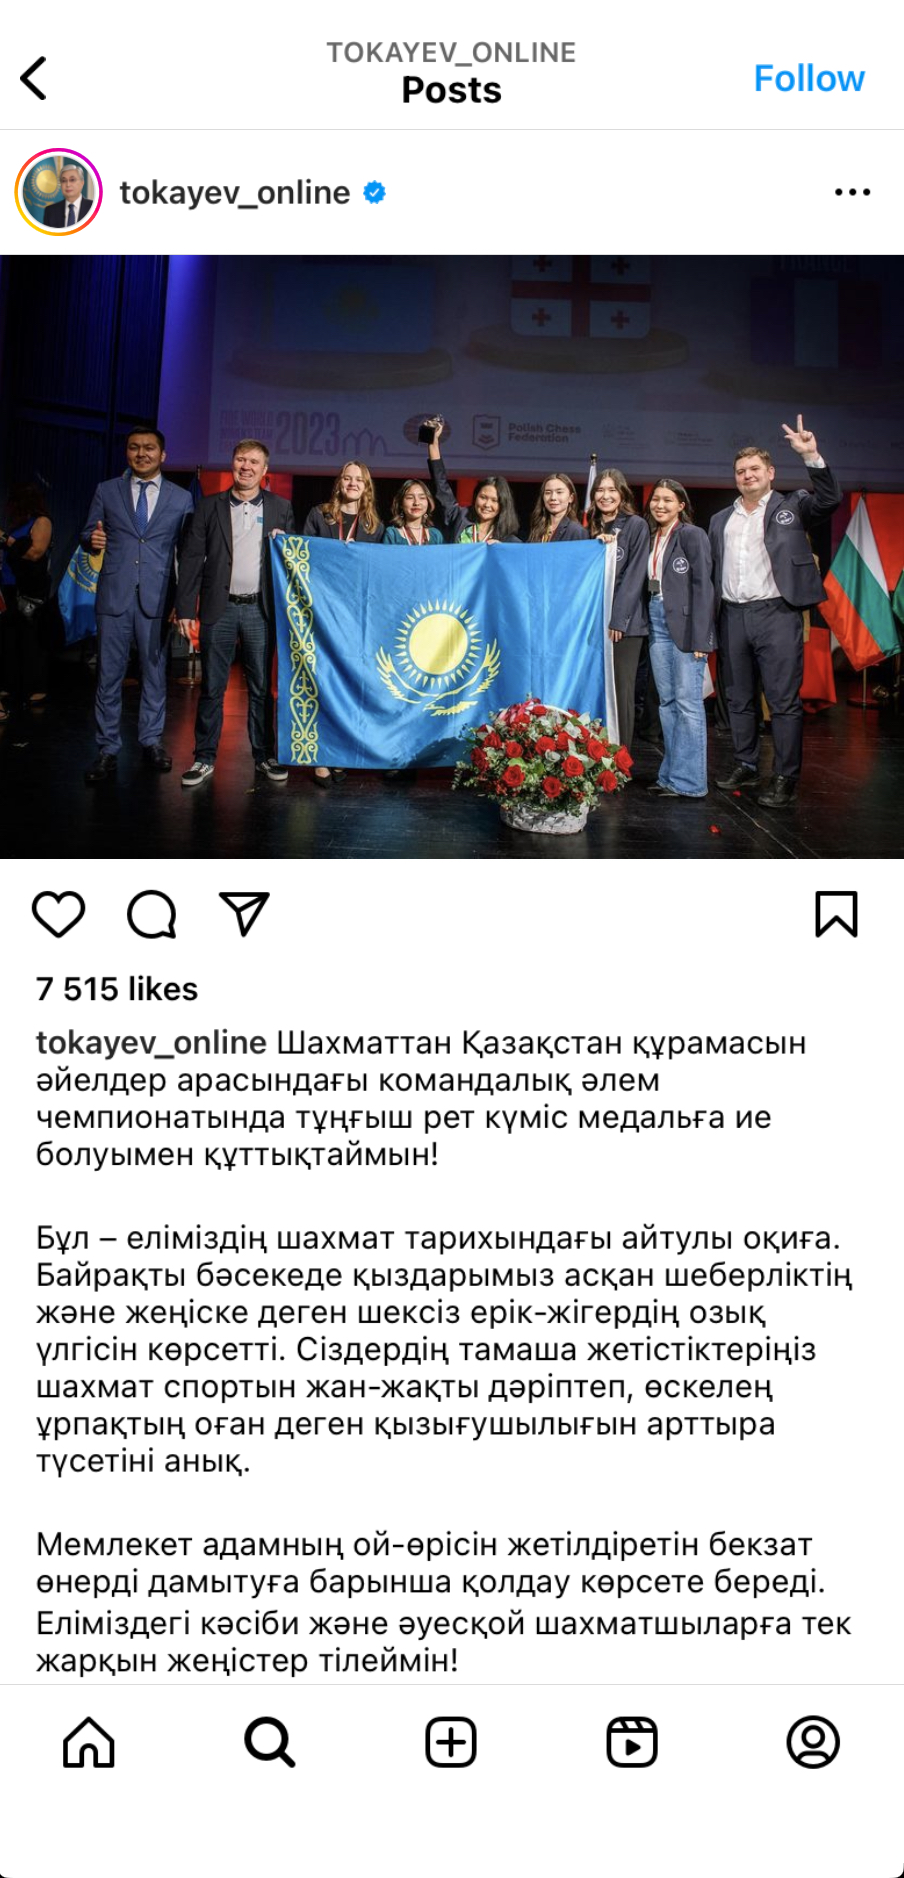 President Tokayev statement on Instagram